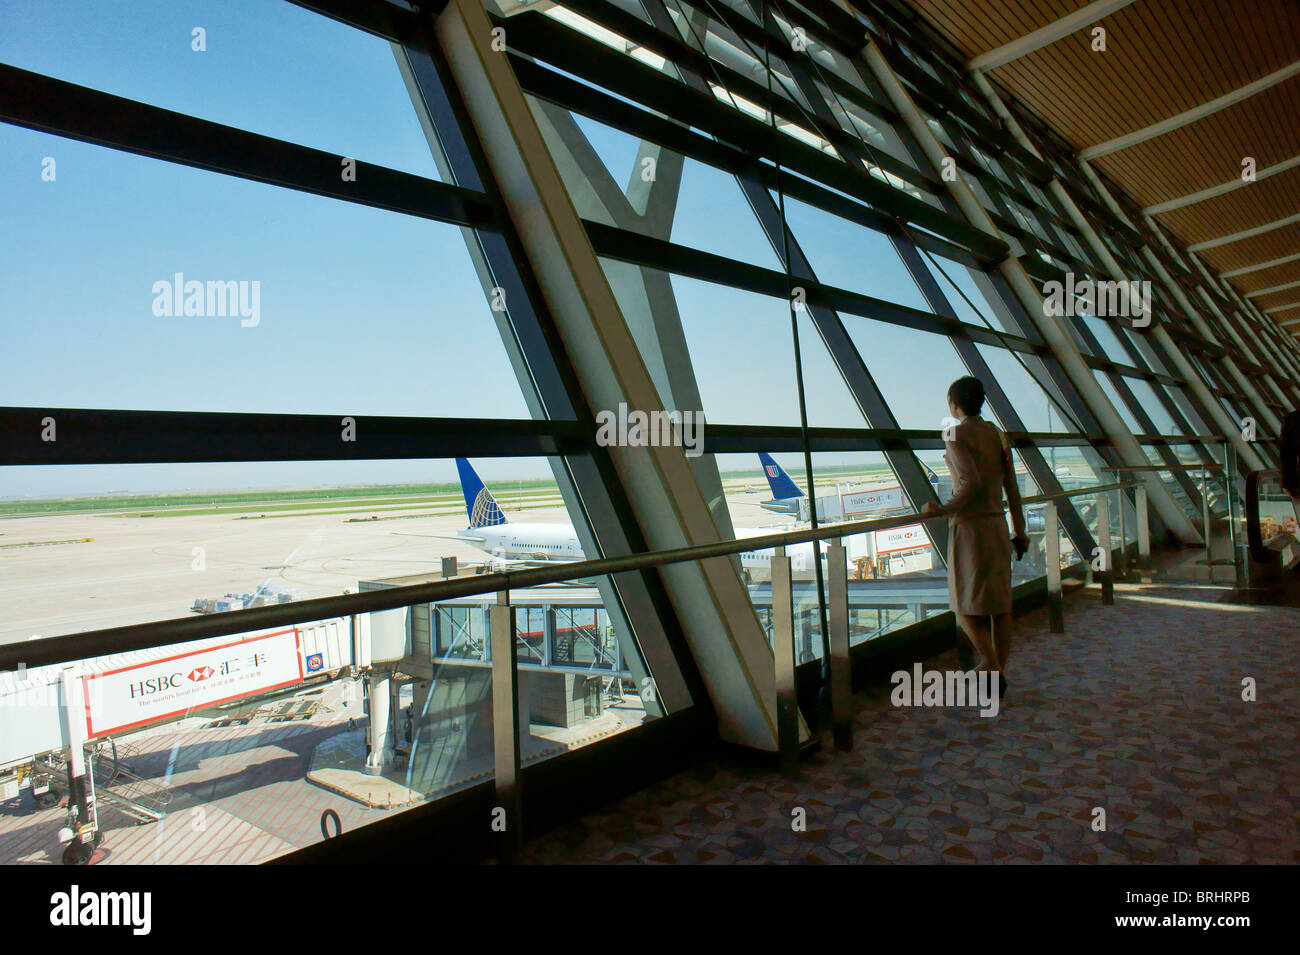 Shanghai, China. Beobachtungsfenster Deck auf Start-und Landebahn Schürze. Abflug-Lounge, internationalen Flughafen Pudong, Shanghai Stockfoto